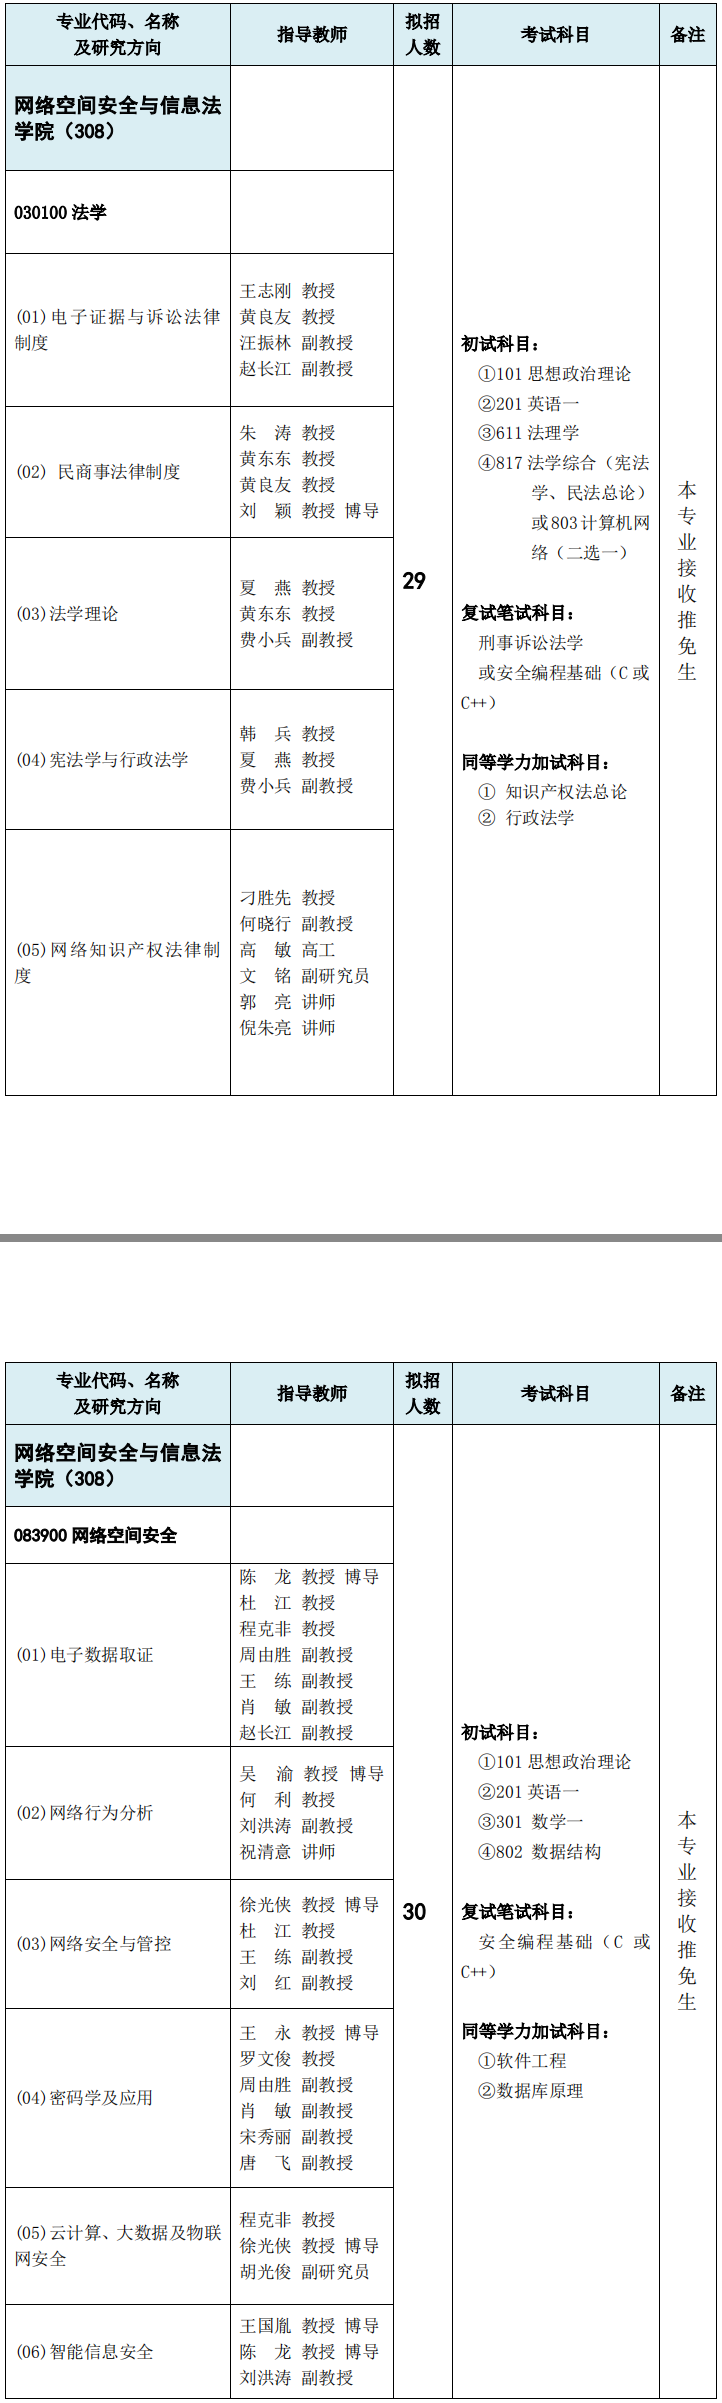 重庆邮电大学网络空间安全与信息法学院2019考研专业目录